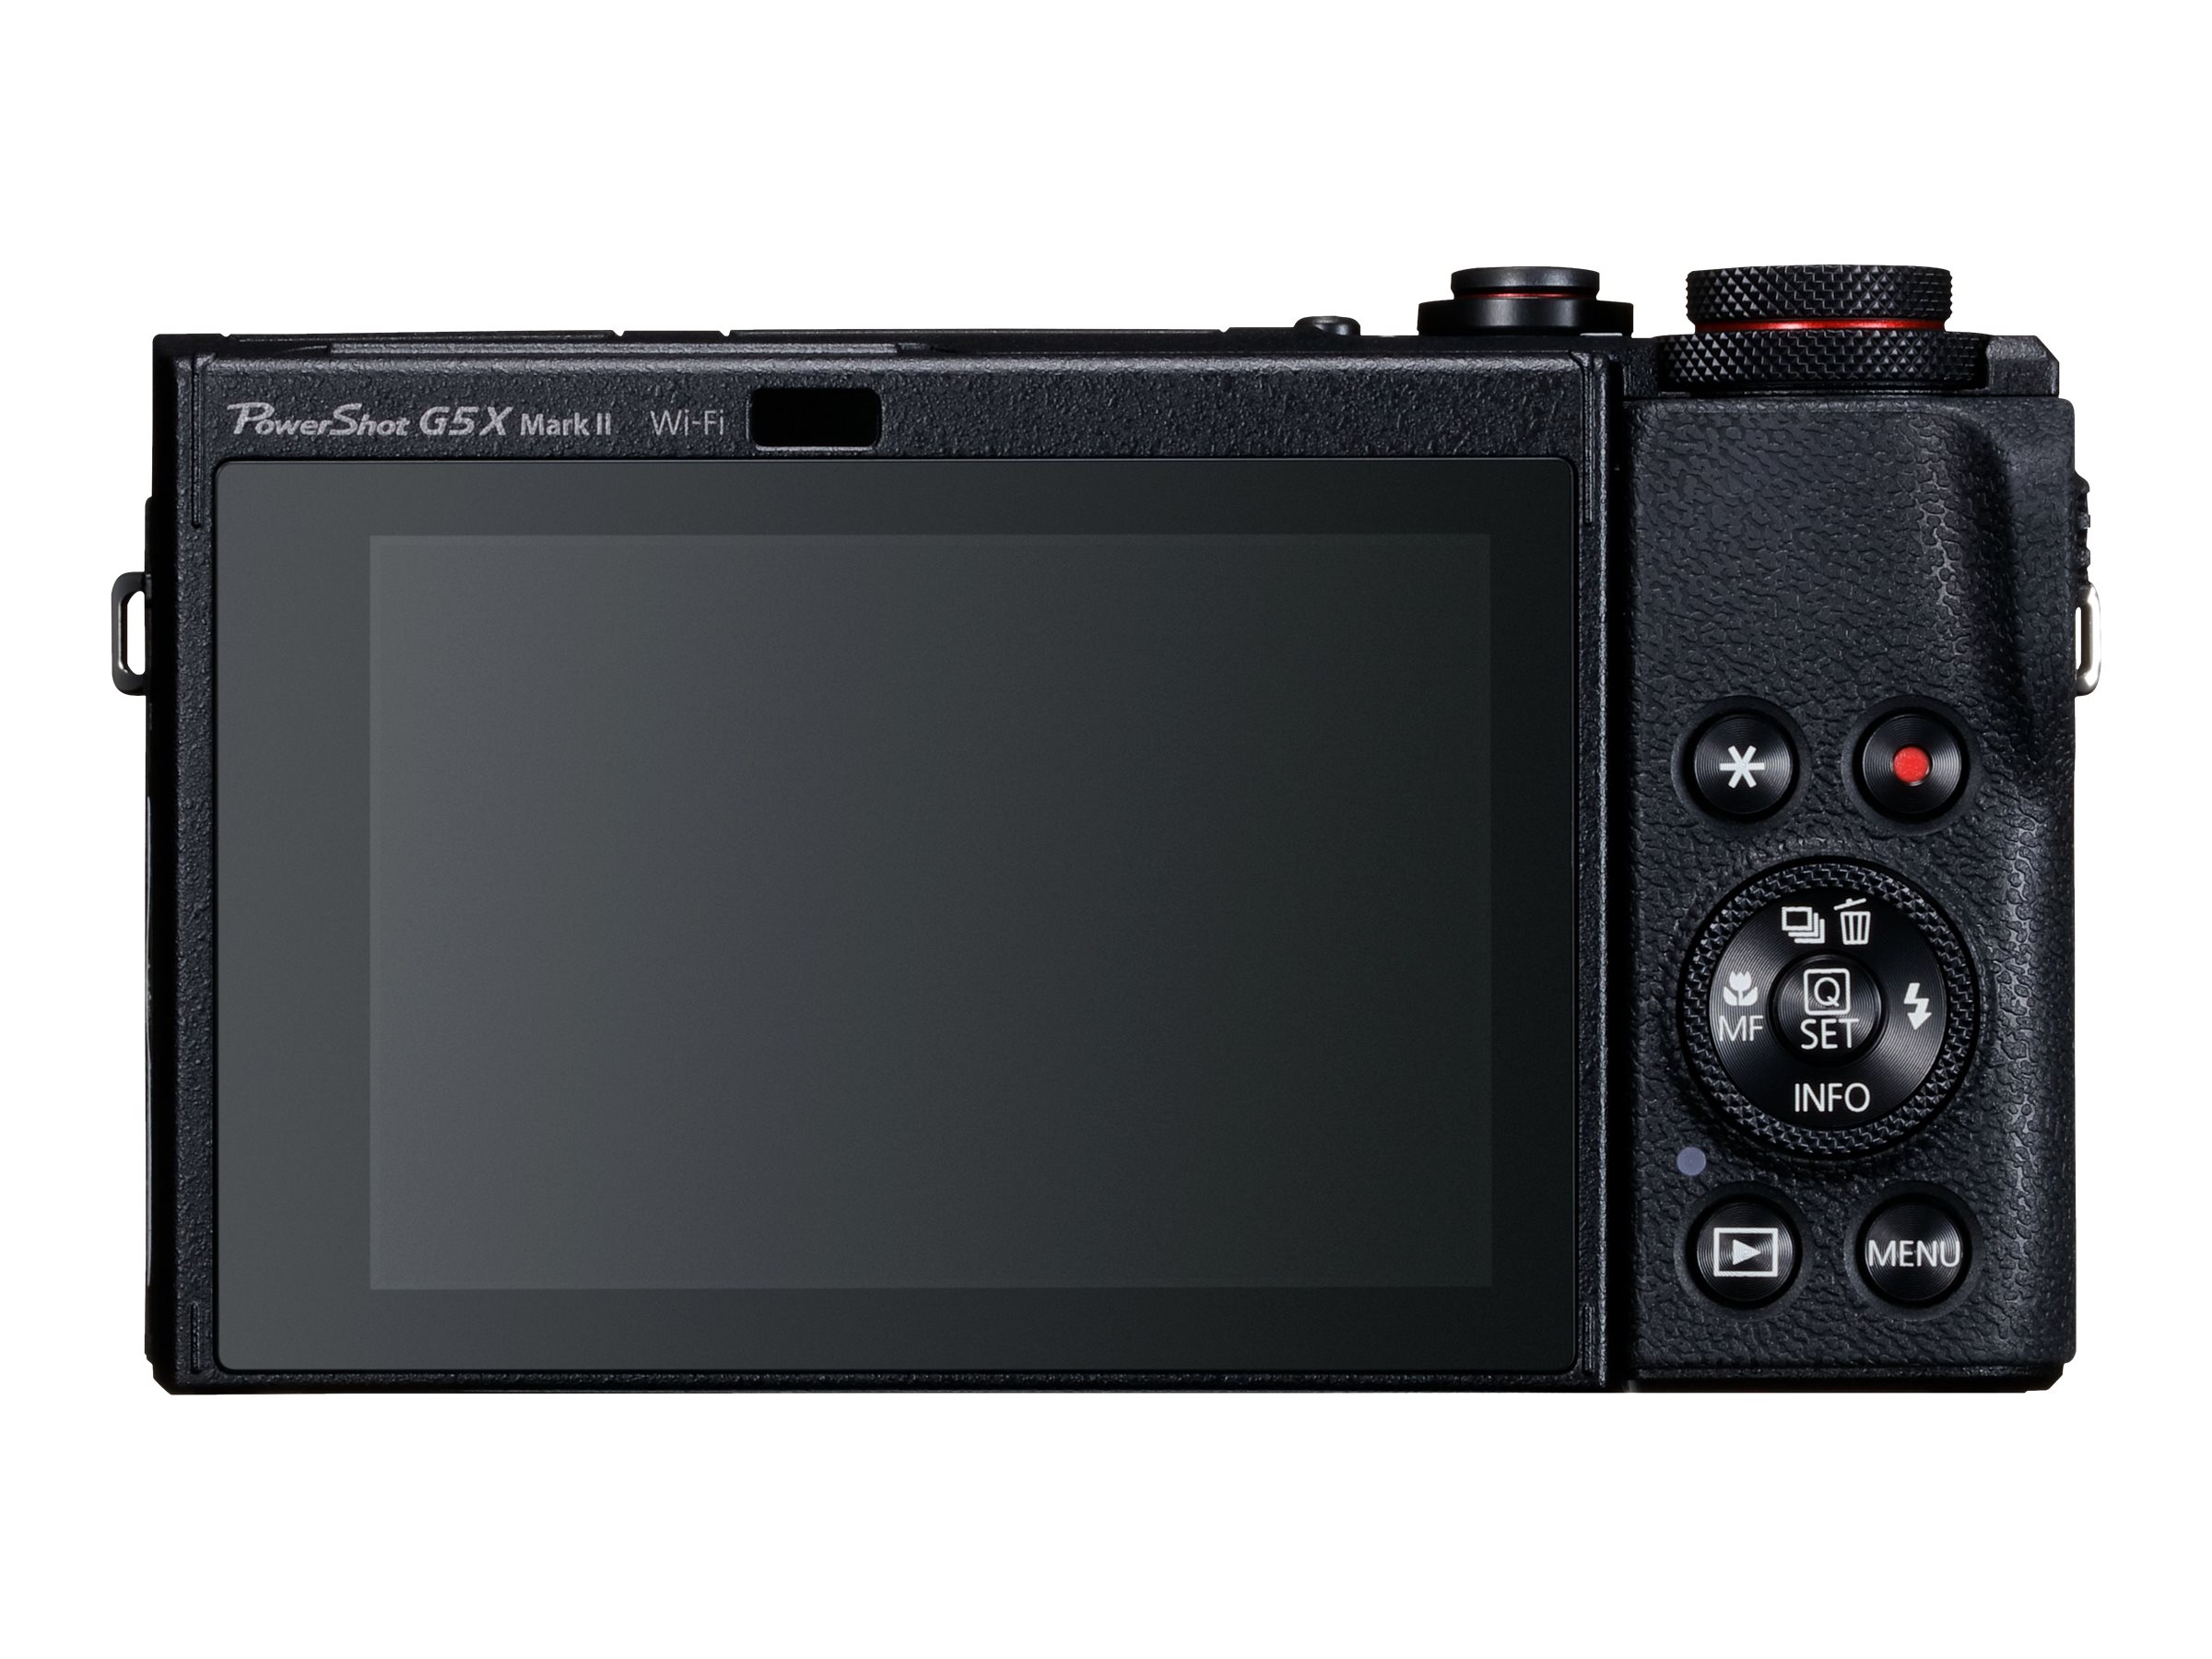 Canon Powershot G5X MKII - Black - 3070C001